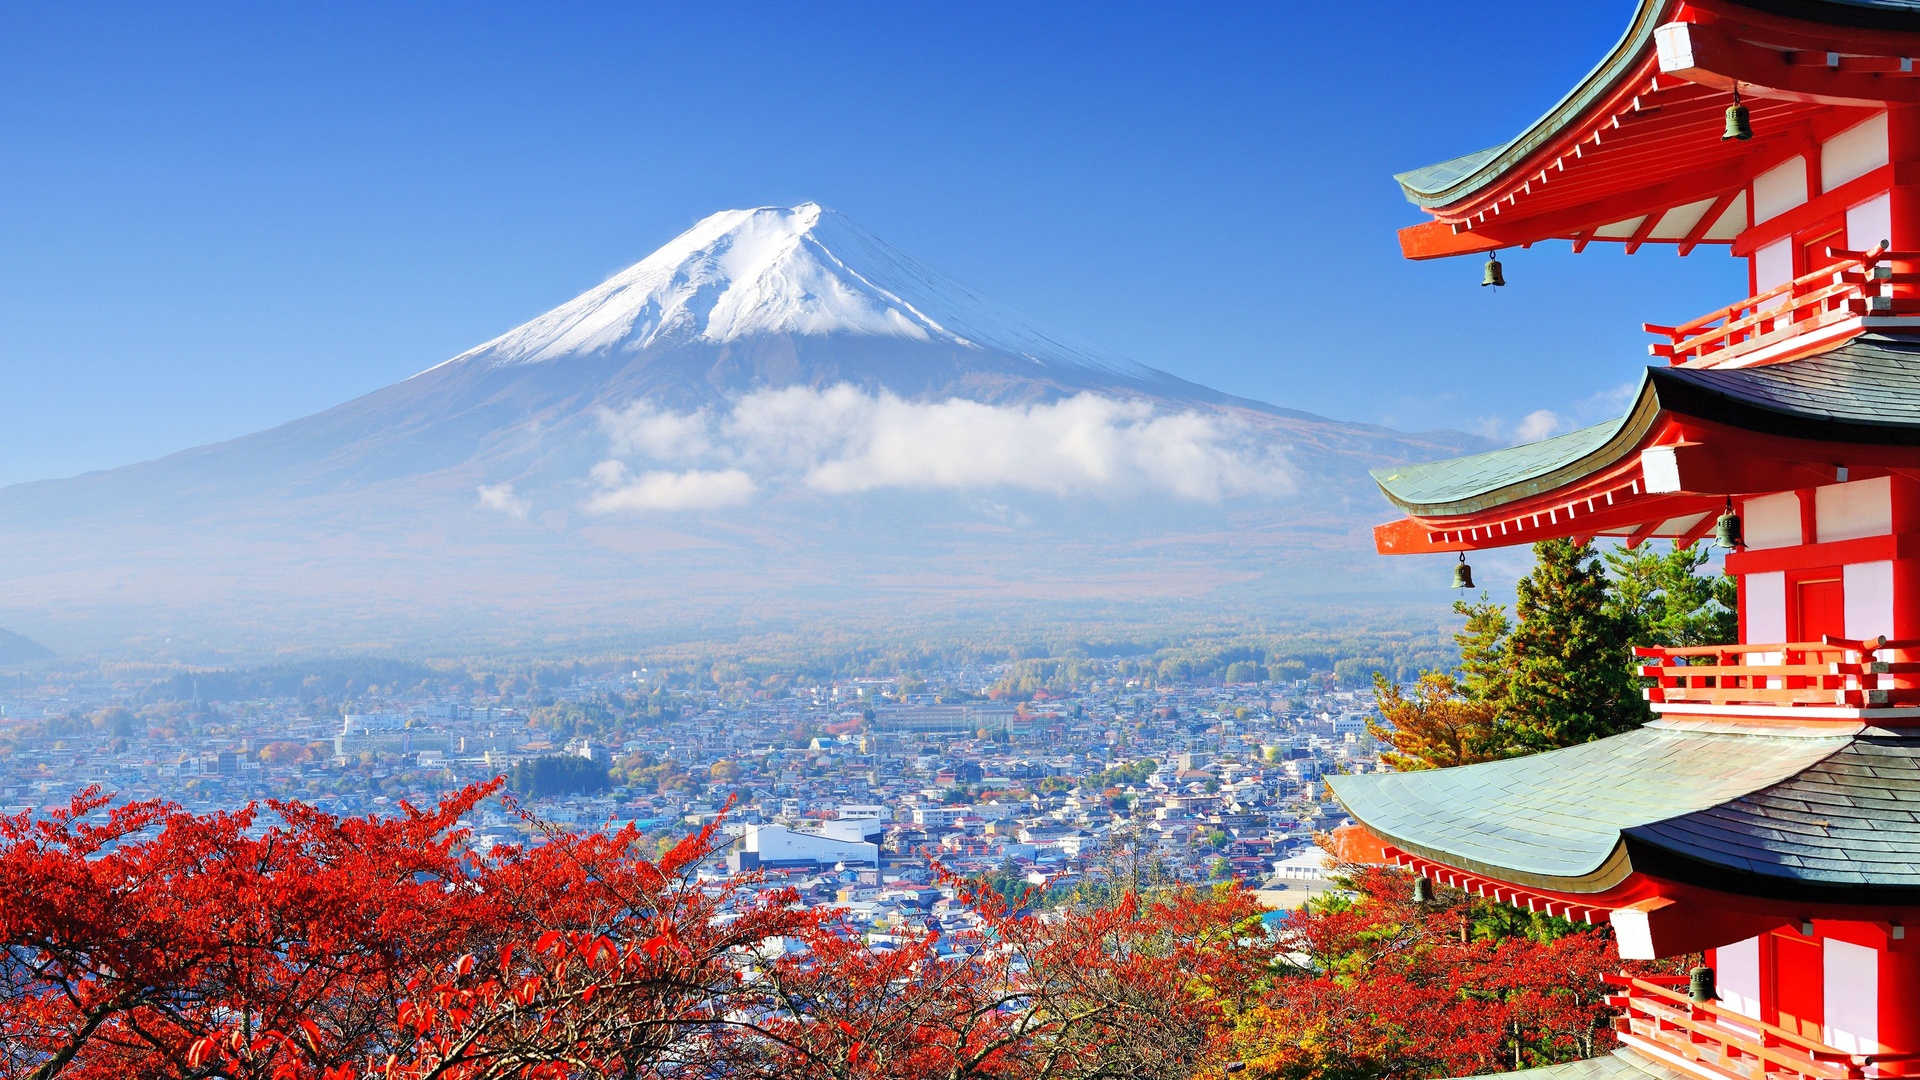 日本富士山楼阁樱花4k专区壁纸日本壁纸图片 桌面壁纸图片 壁纸下载 元气壁纸